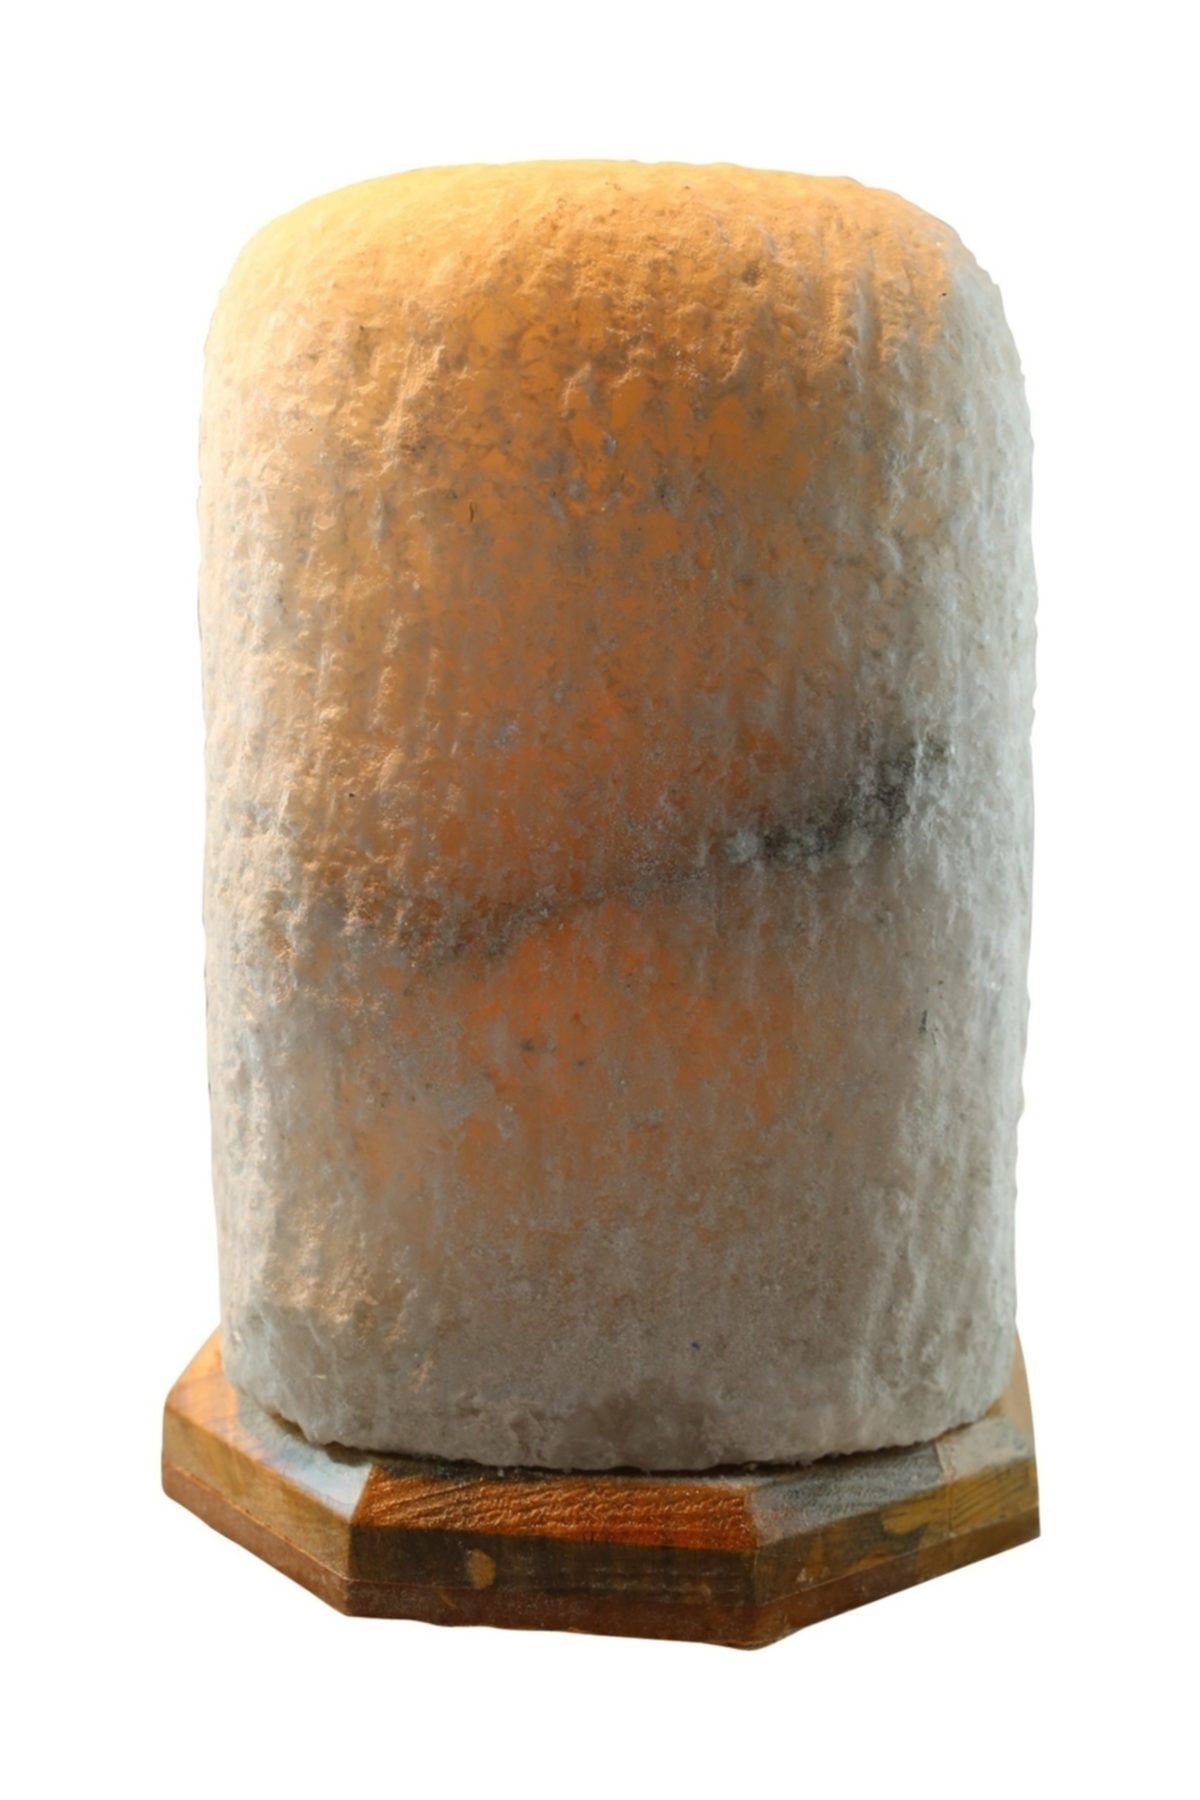 Çankırı Tuz Lamba Doğal Model Kaya Tuz Lambası 3 kg